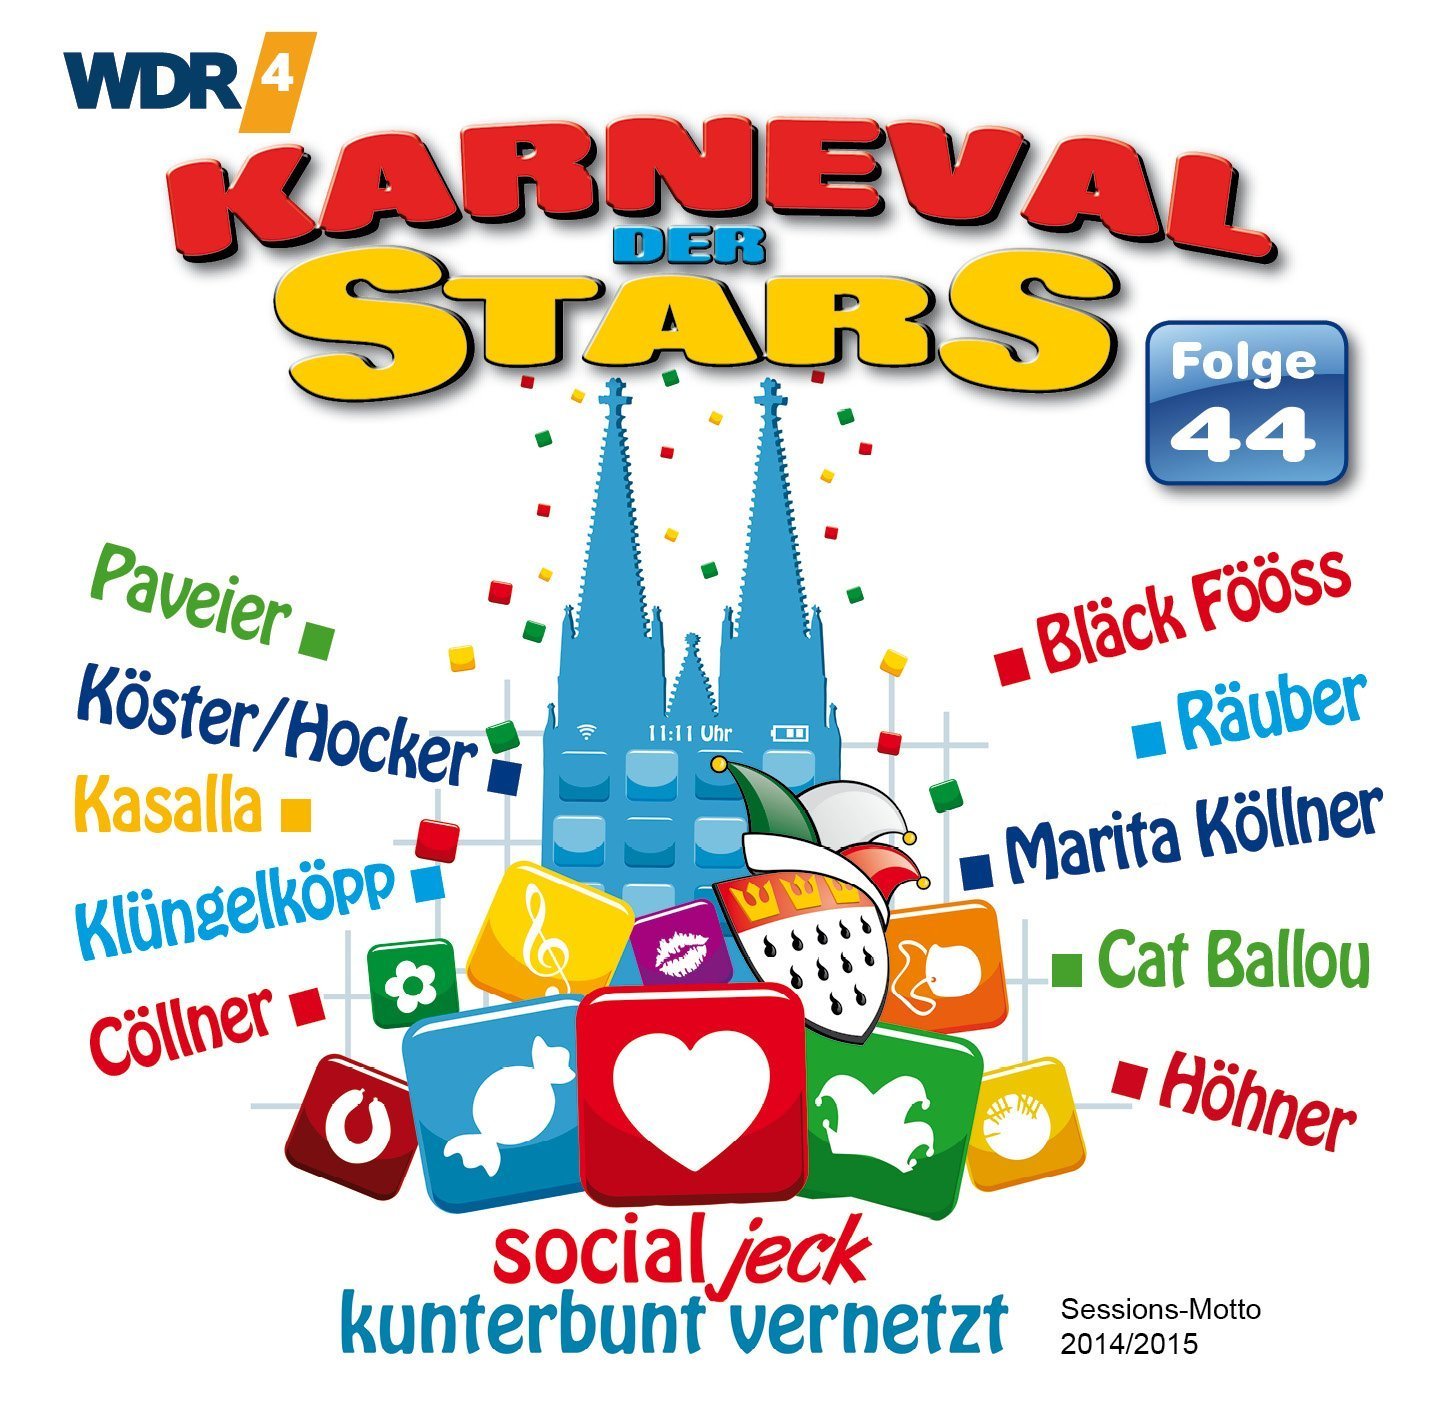 Karneval der Stars, Folge 44 — Various Artists | Last.fm